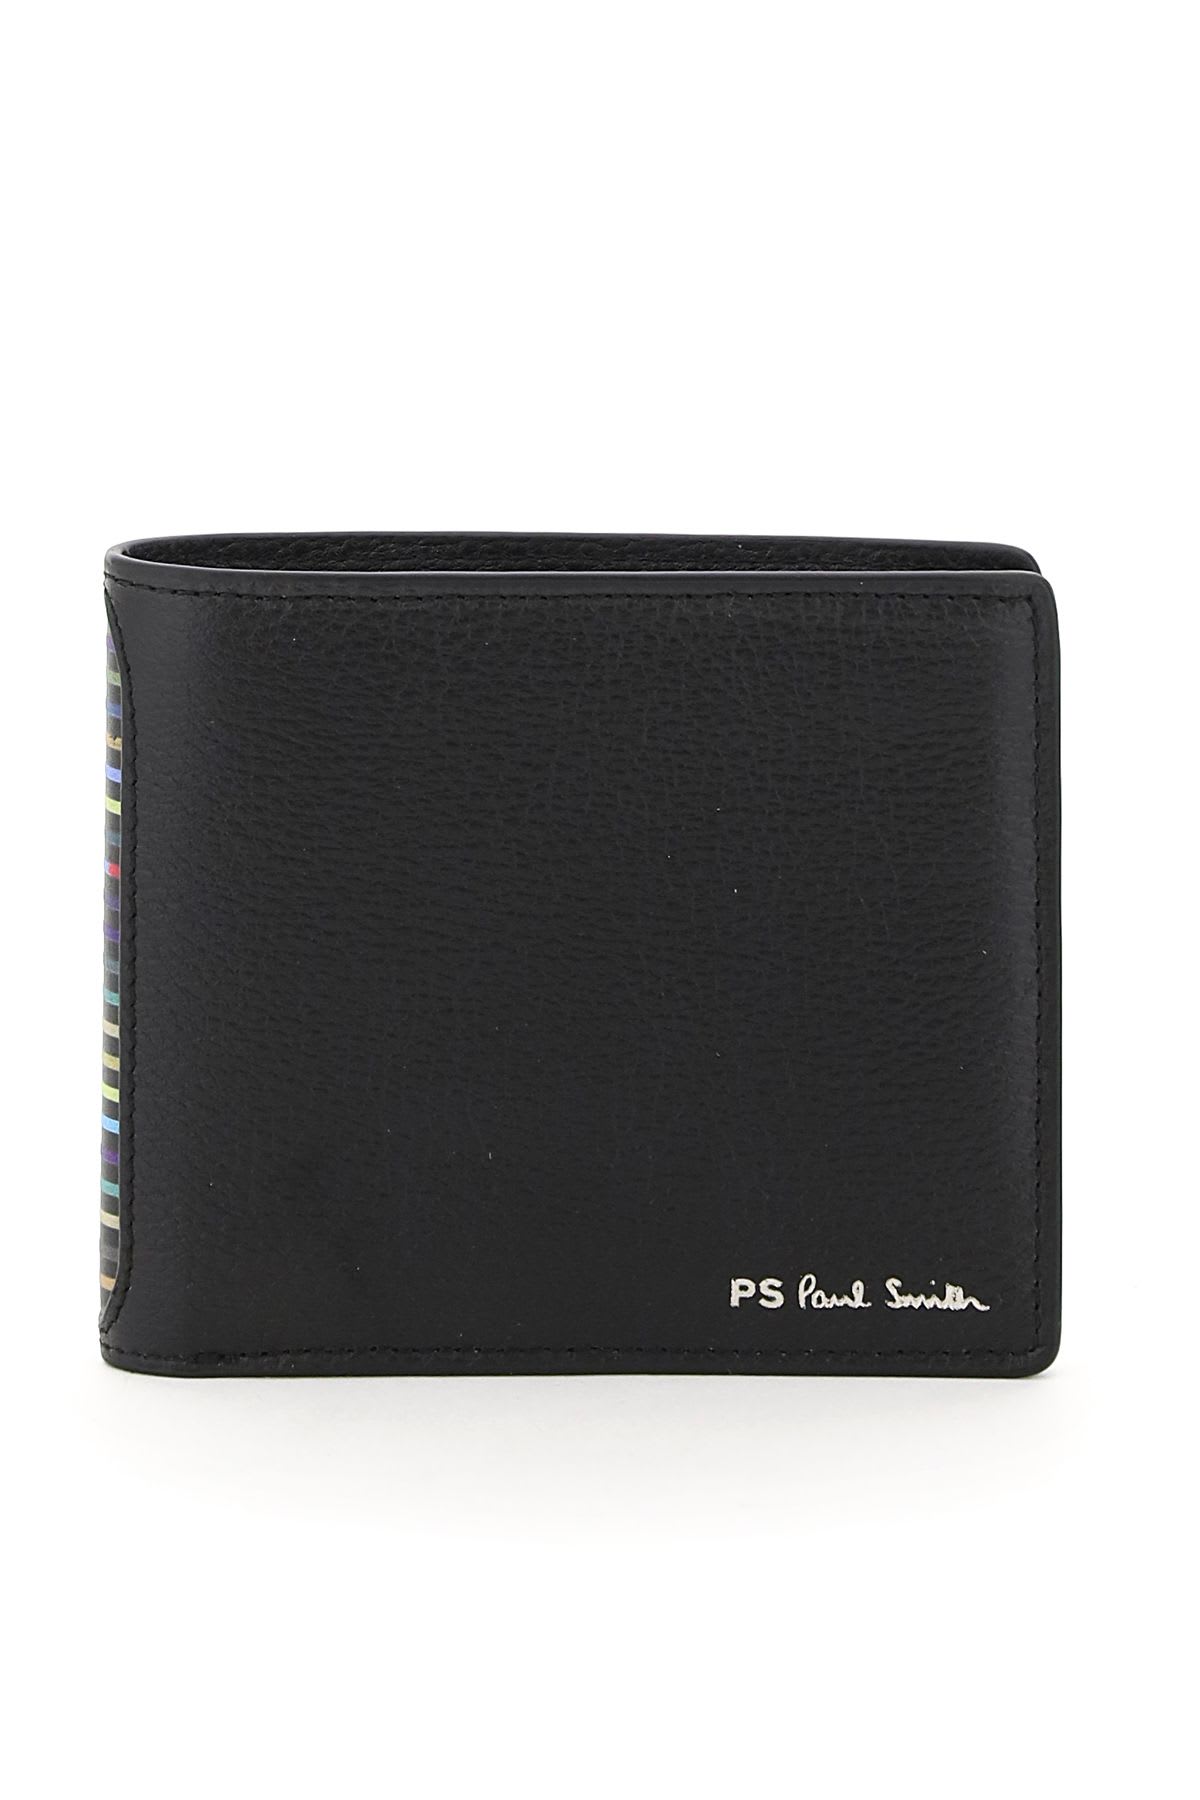 Paul Smith Ps Stripe Wallet